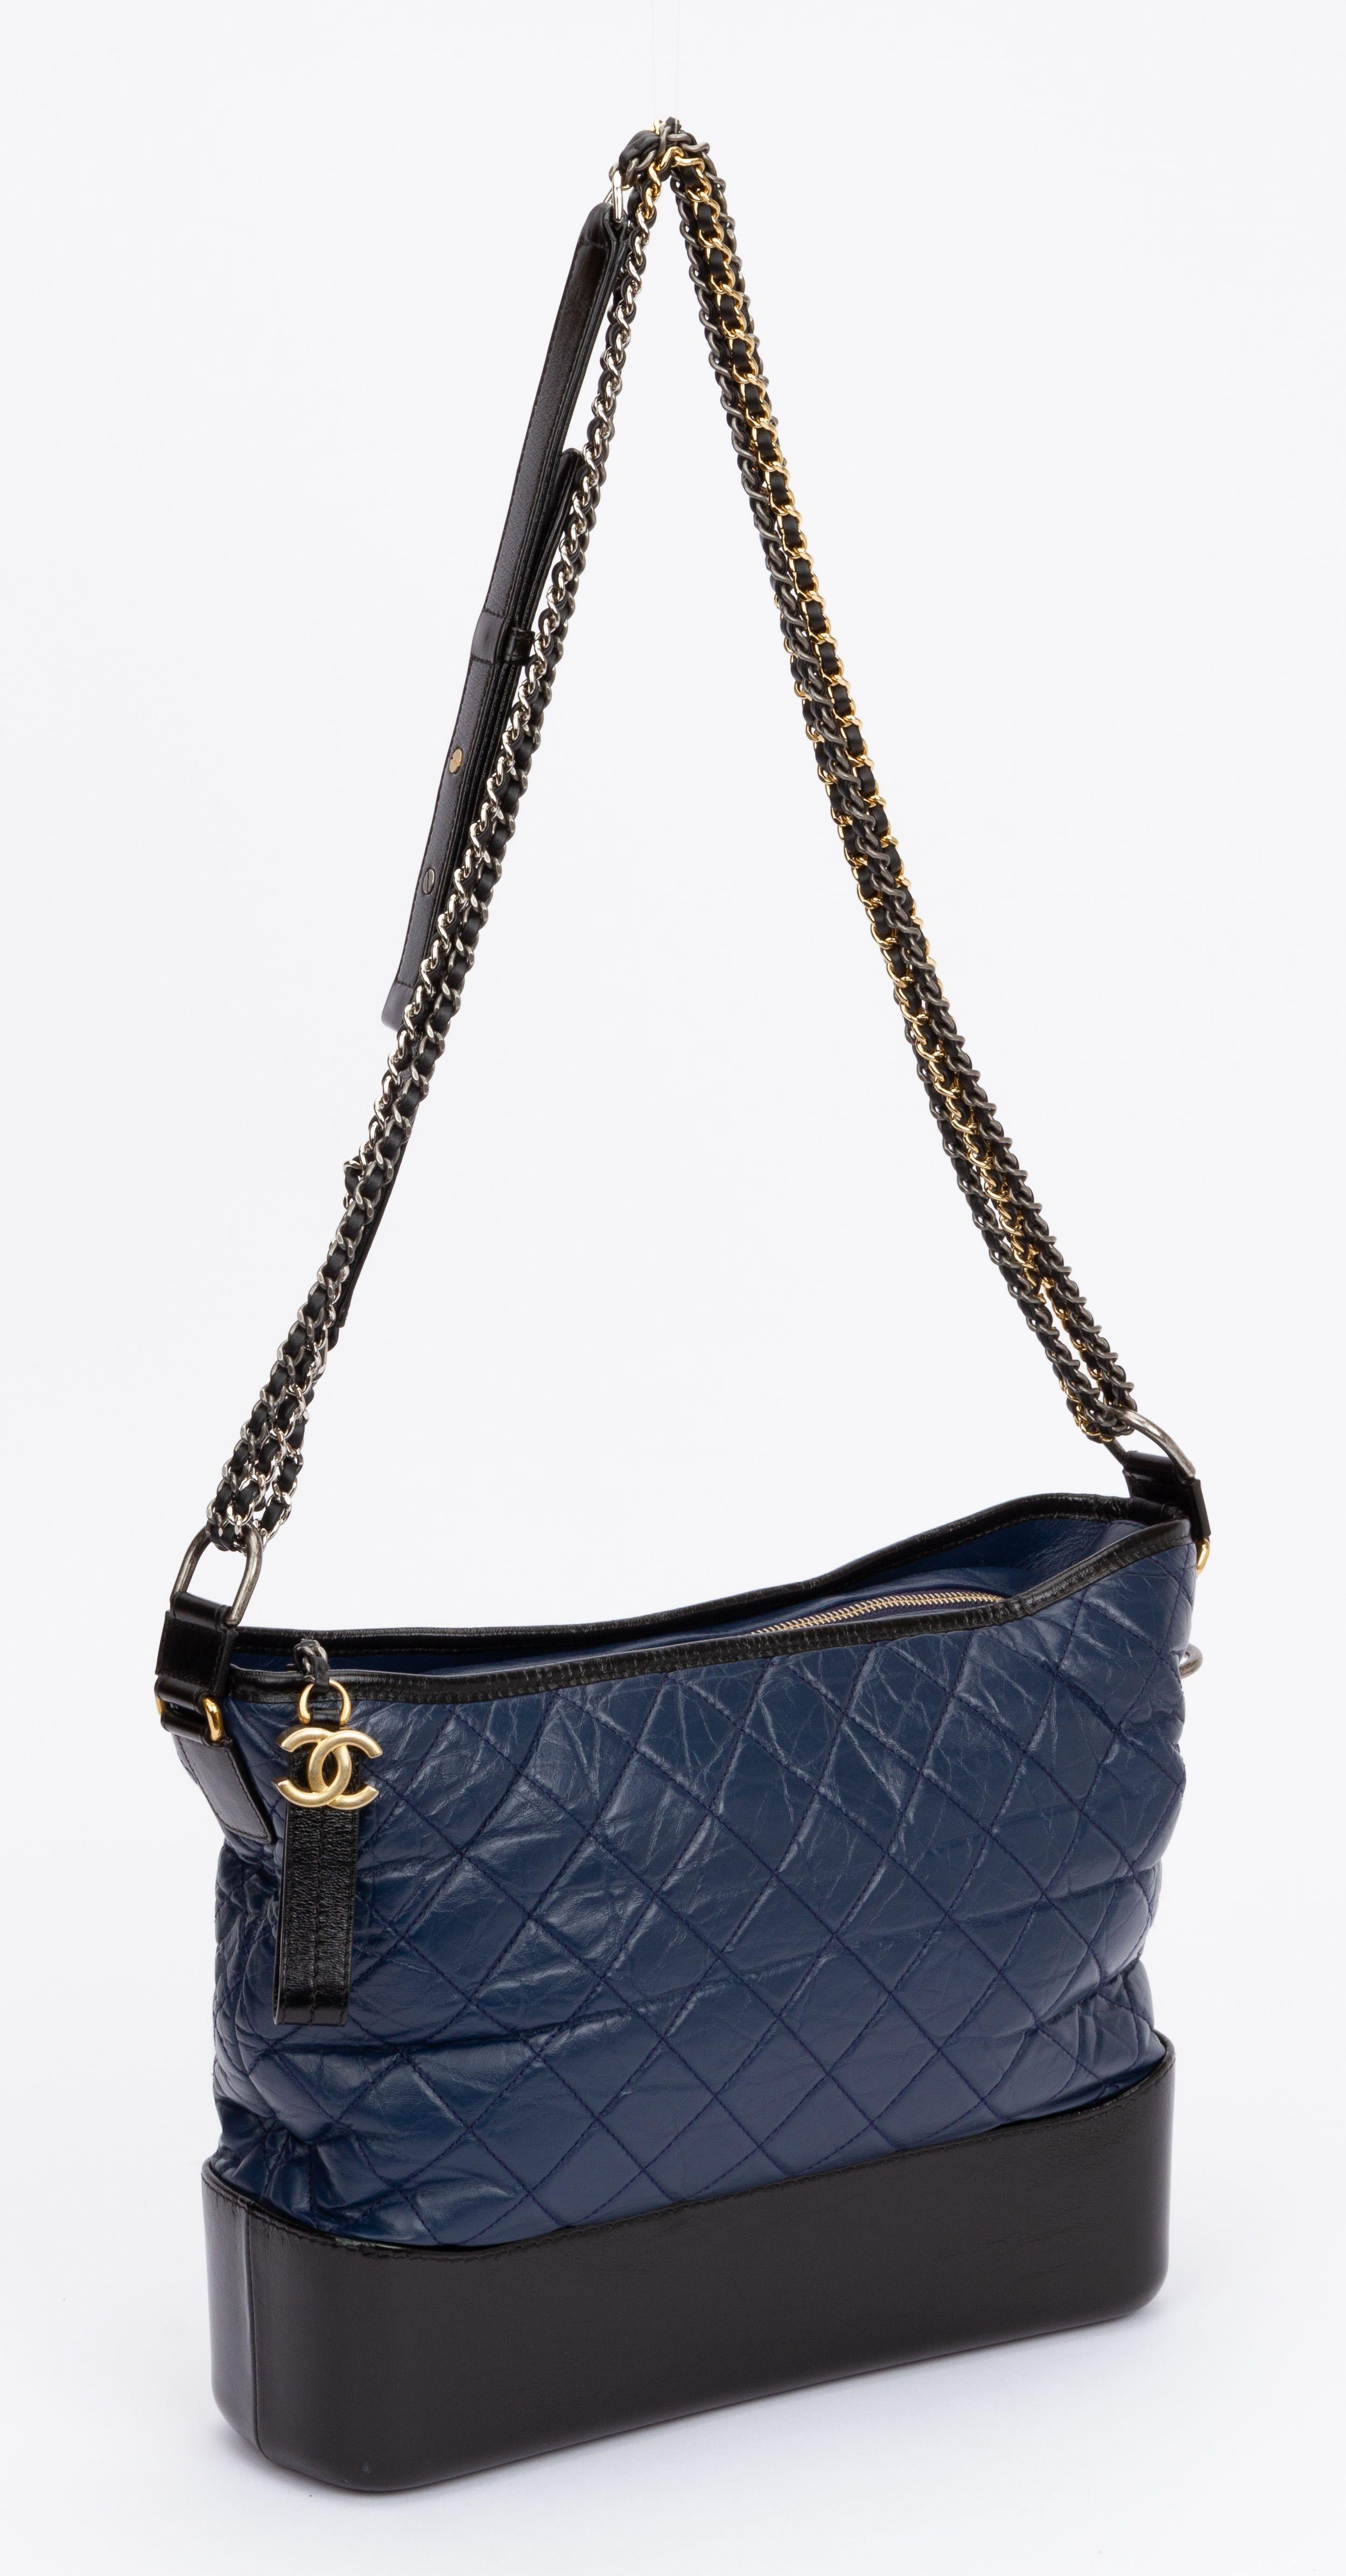 Chanel große Gabrielle Tasche in schwarzer und blauer Lederkombination. Gold- und Rutheniumbeschläge. Schultergurtfall 18,5